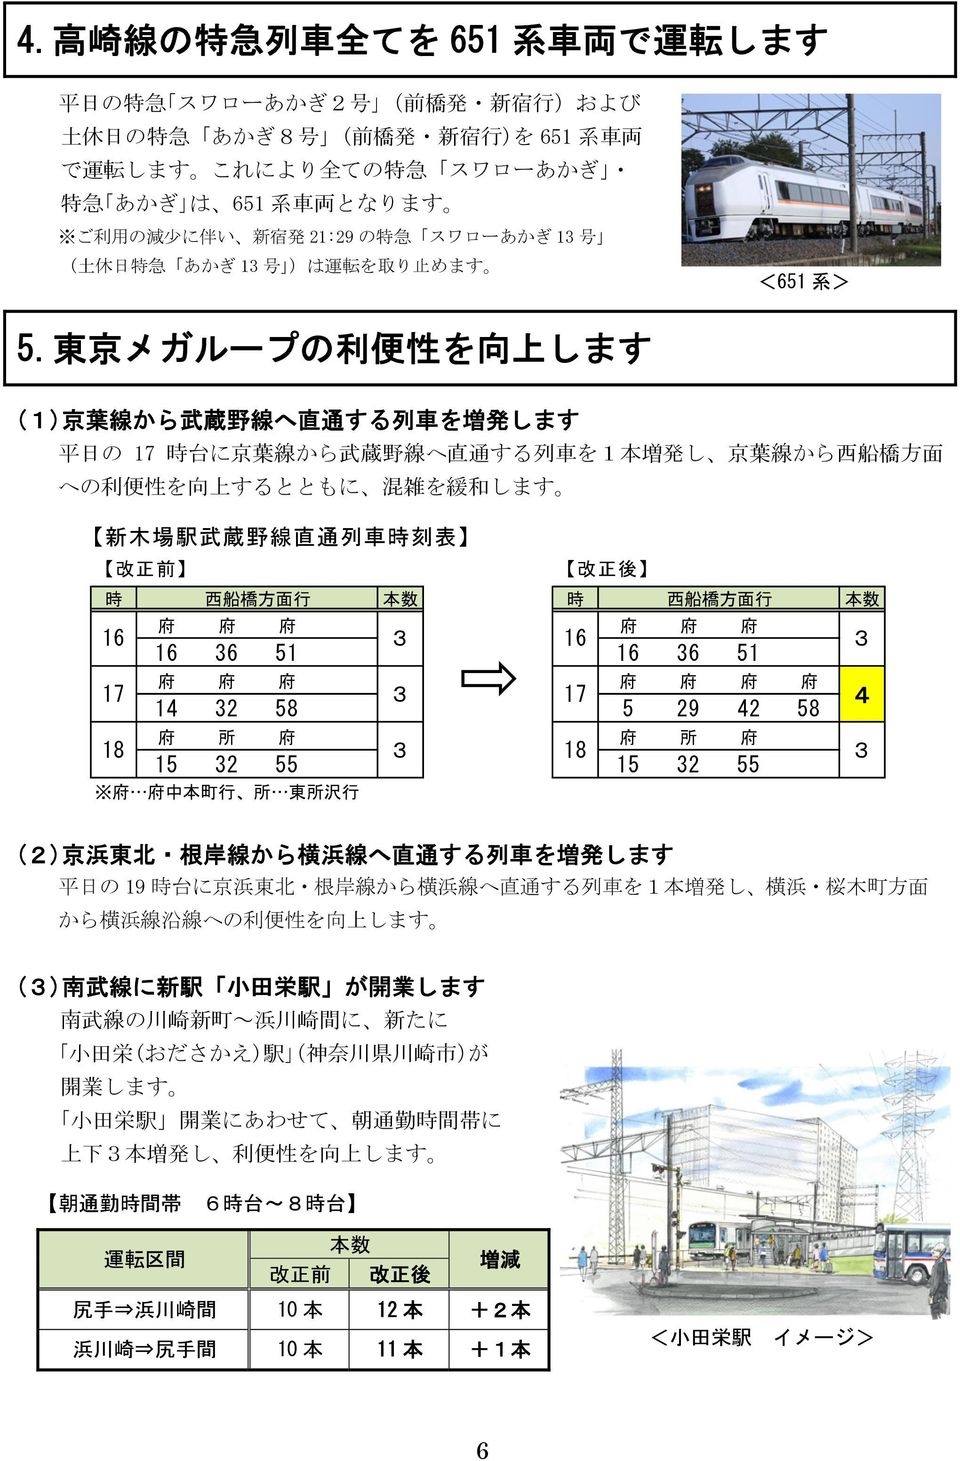 東 京 メガループの 利 便 性 を 向 します (1) 京 葉 線 から 武 蔵 野 線 へ 直 通 する 列 車 を 増 発 します 平 日 の 17 時 台 に 京 葉 線 から 武 蔵 野 線 へ 直 通 する 列 車 を1 本 増 発 し 京 葉 線 から 西 船 橋 方 面 への 利 便 性 を 向 するとともに 混 雑 を 緩 和 します 木 場 駅 武 蔵 野 線 直 通 列 車